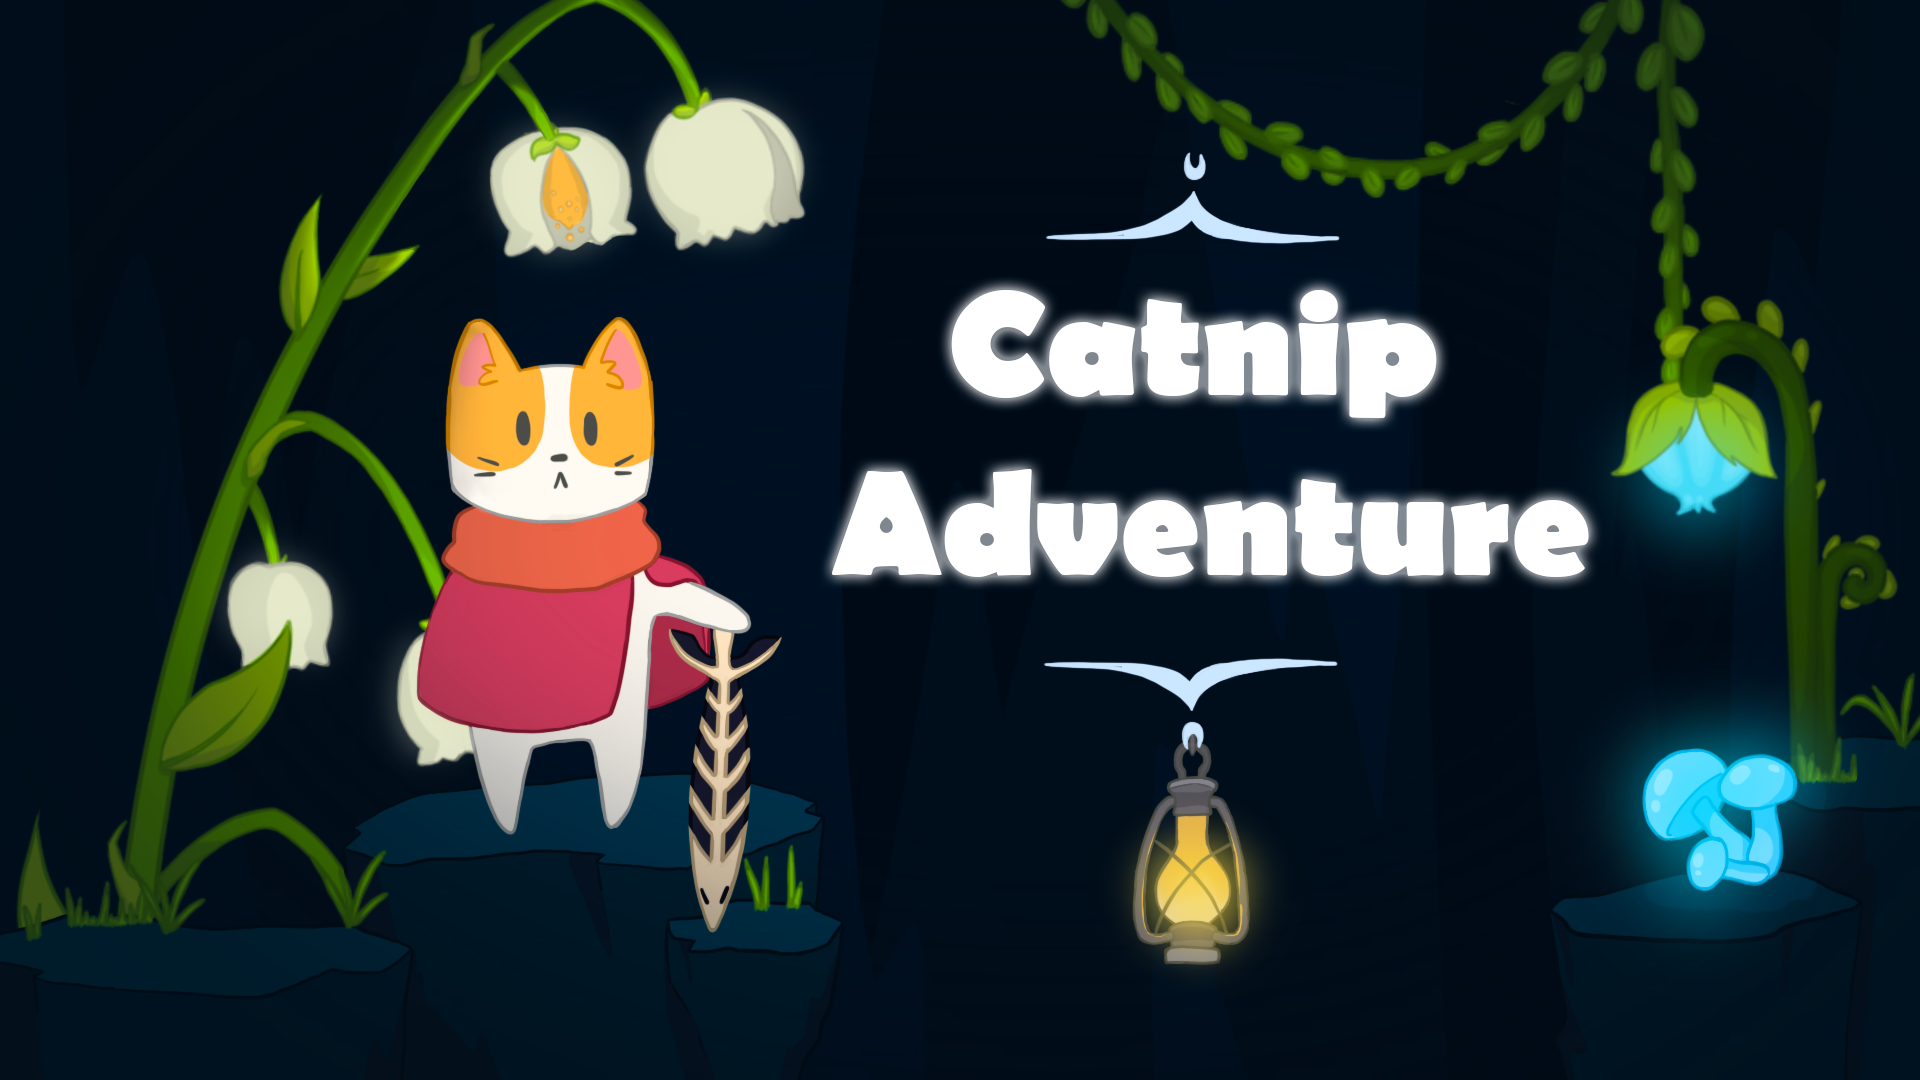 Catnip Adventure